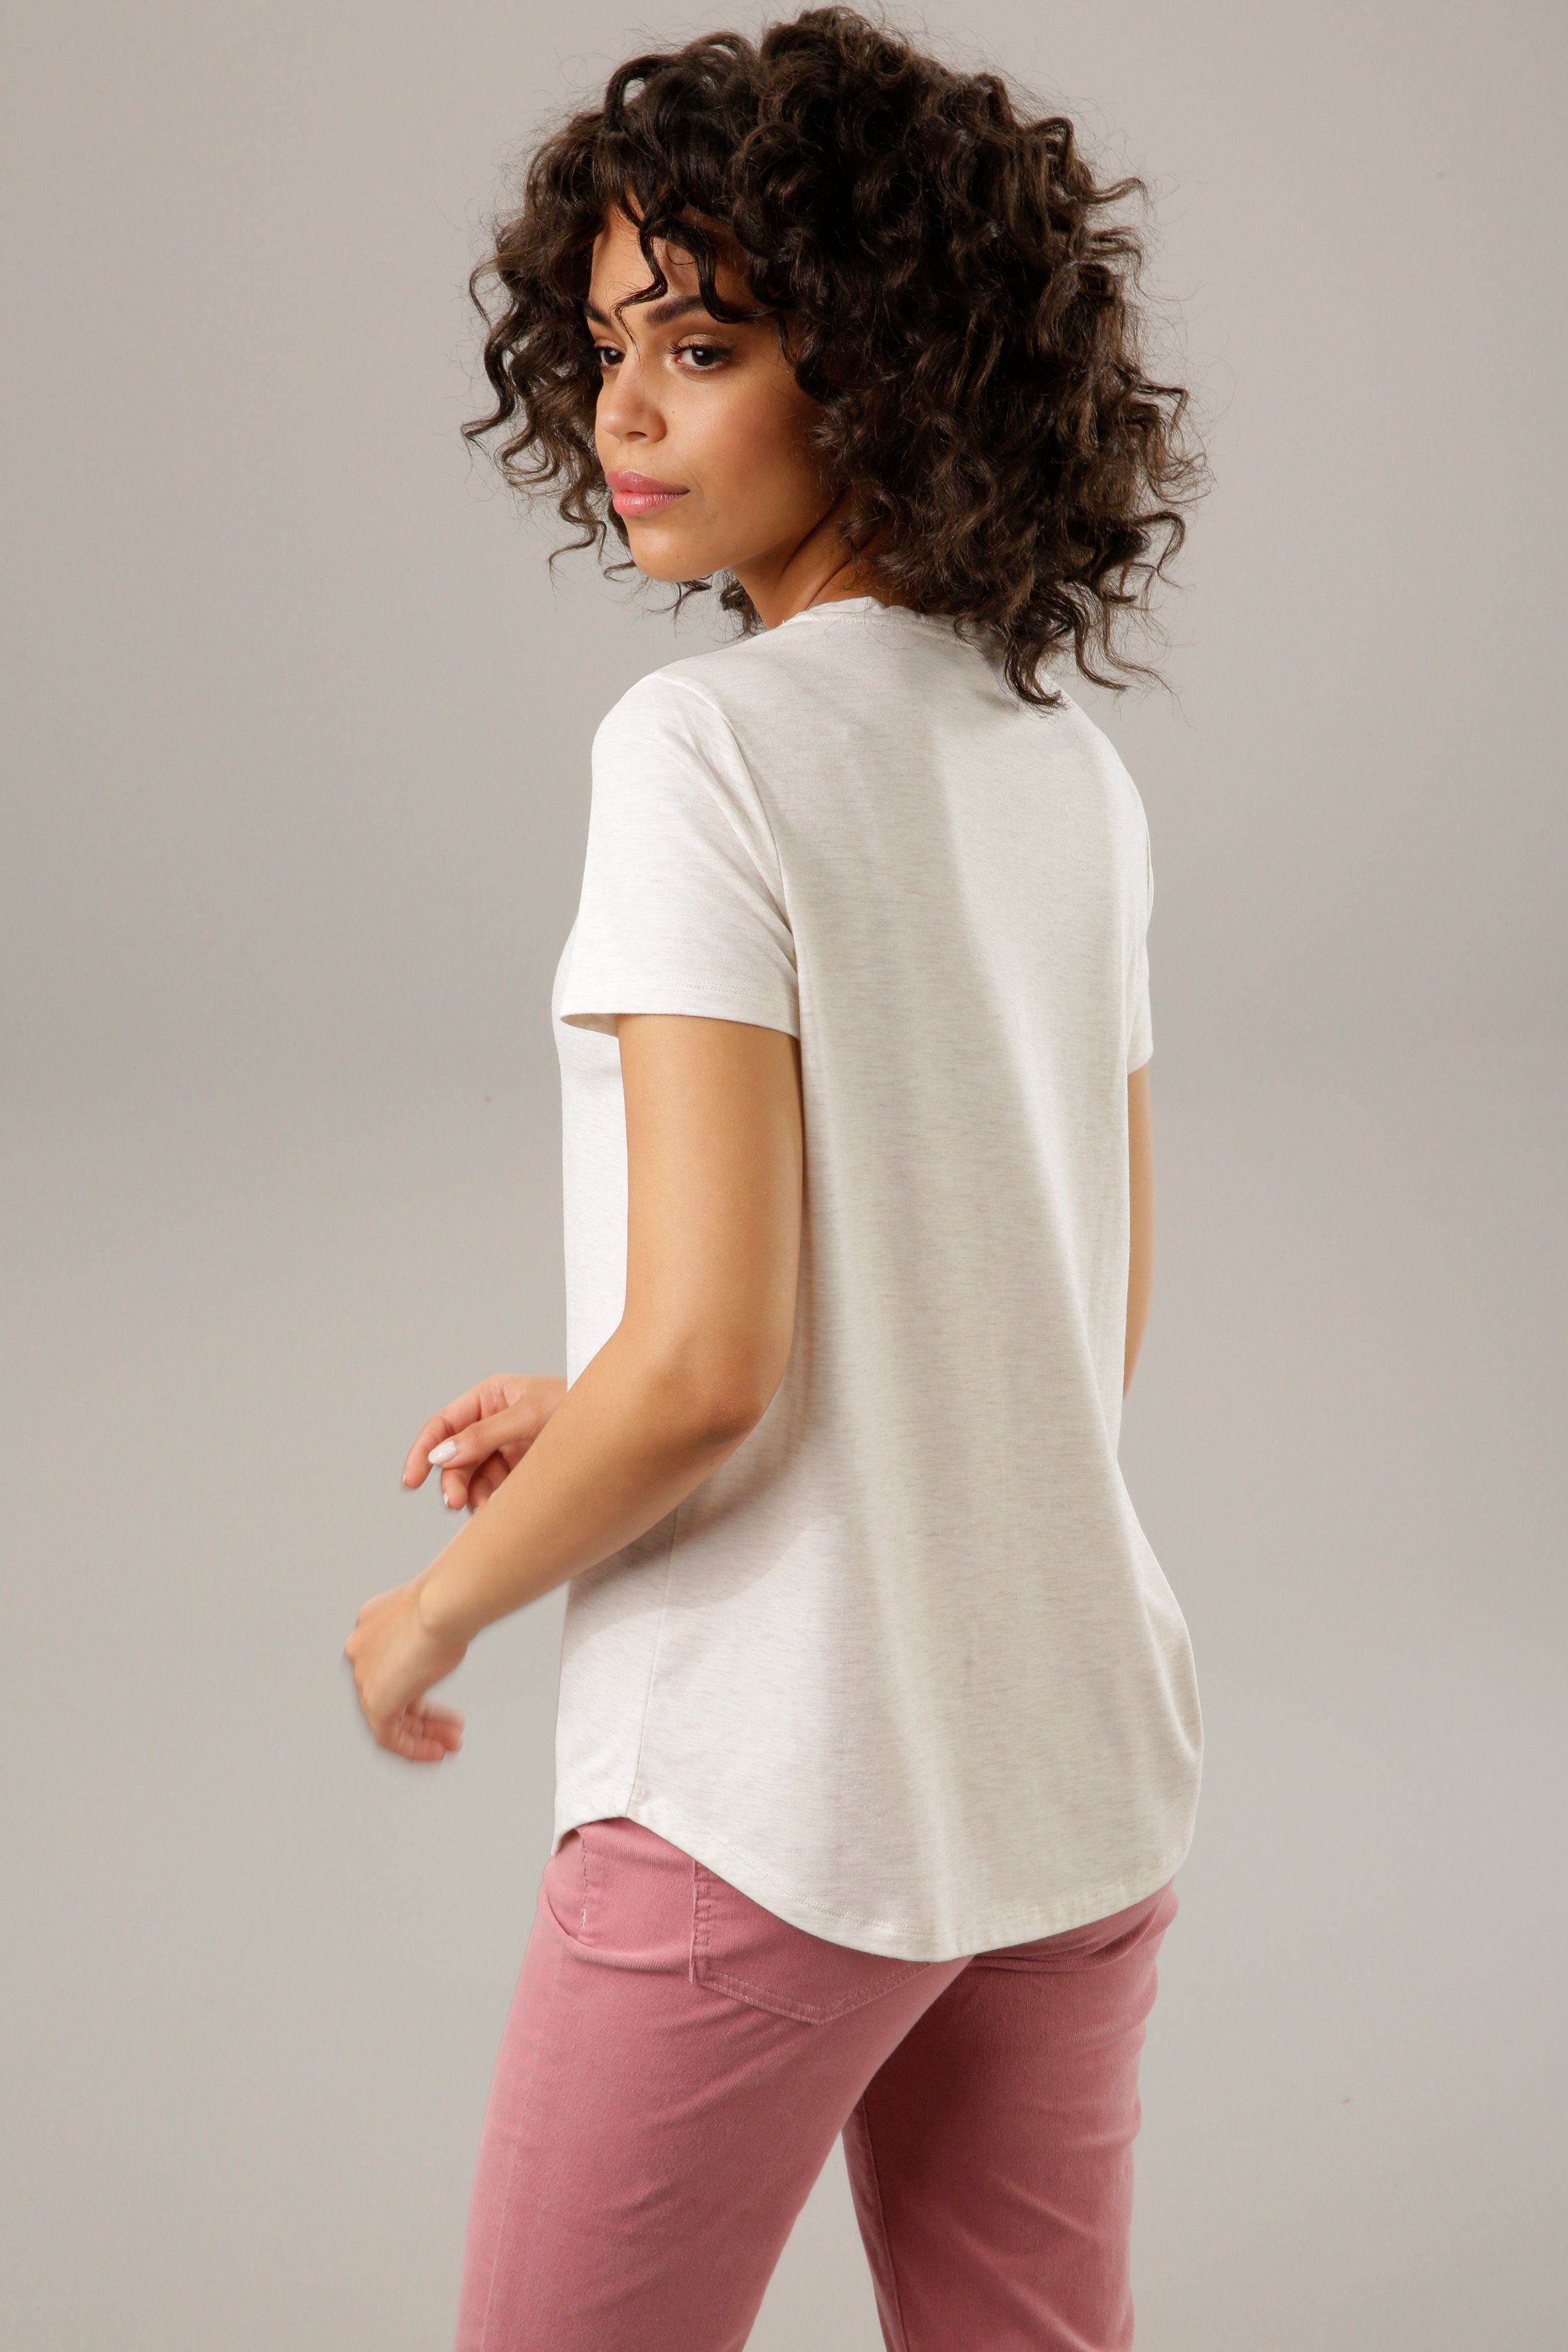 Aniston CASUAL T-Shirt mit Glitzer verziertem Frontdruck natur-dunkelbraun-weiß-rosa-goldfarben